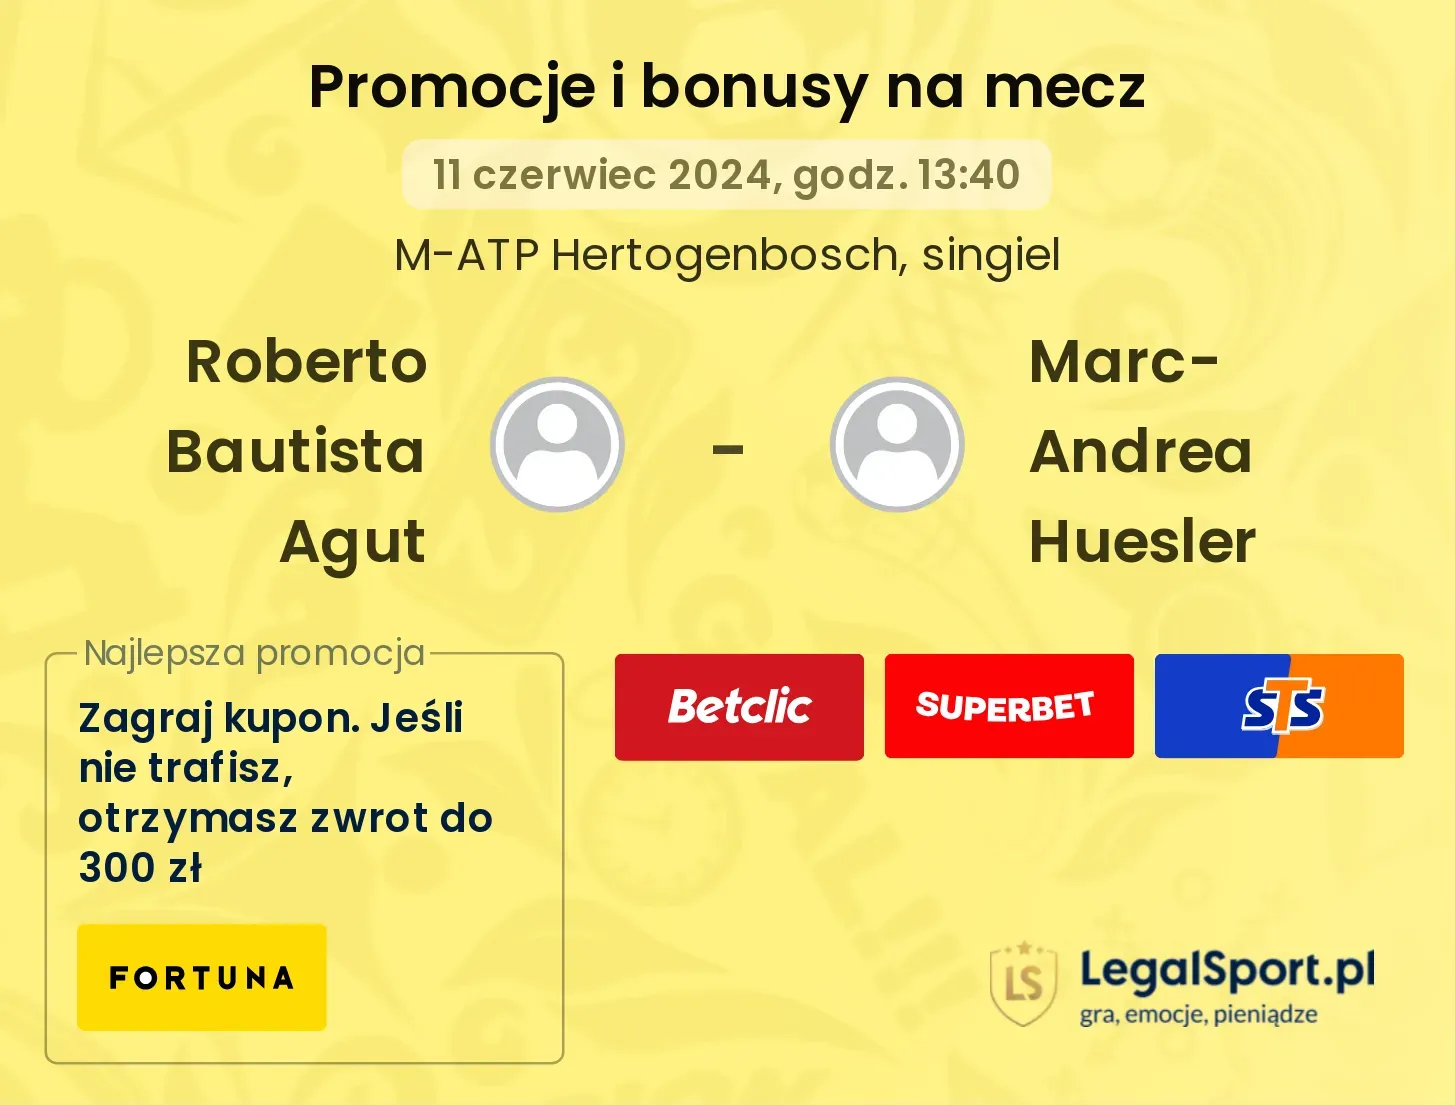 Roberto Bautista Agut - Marc-Andrea Huesler promocje bonusy na mecz